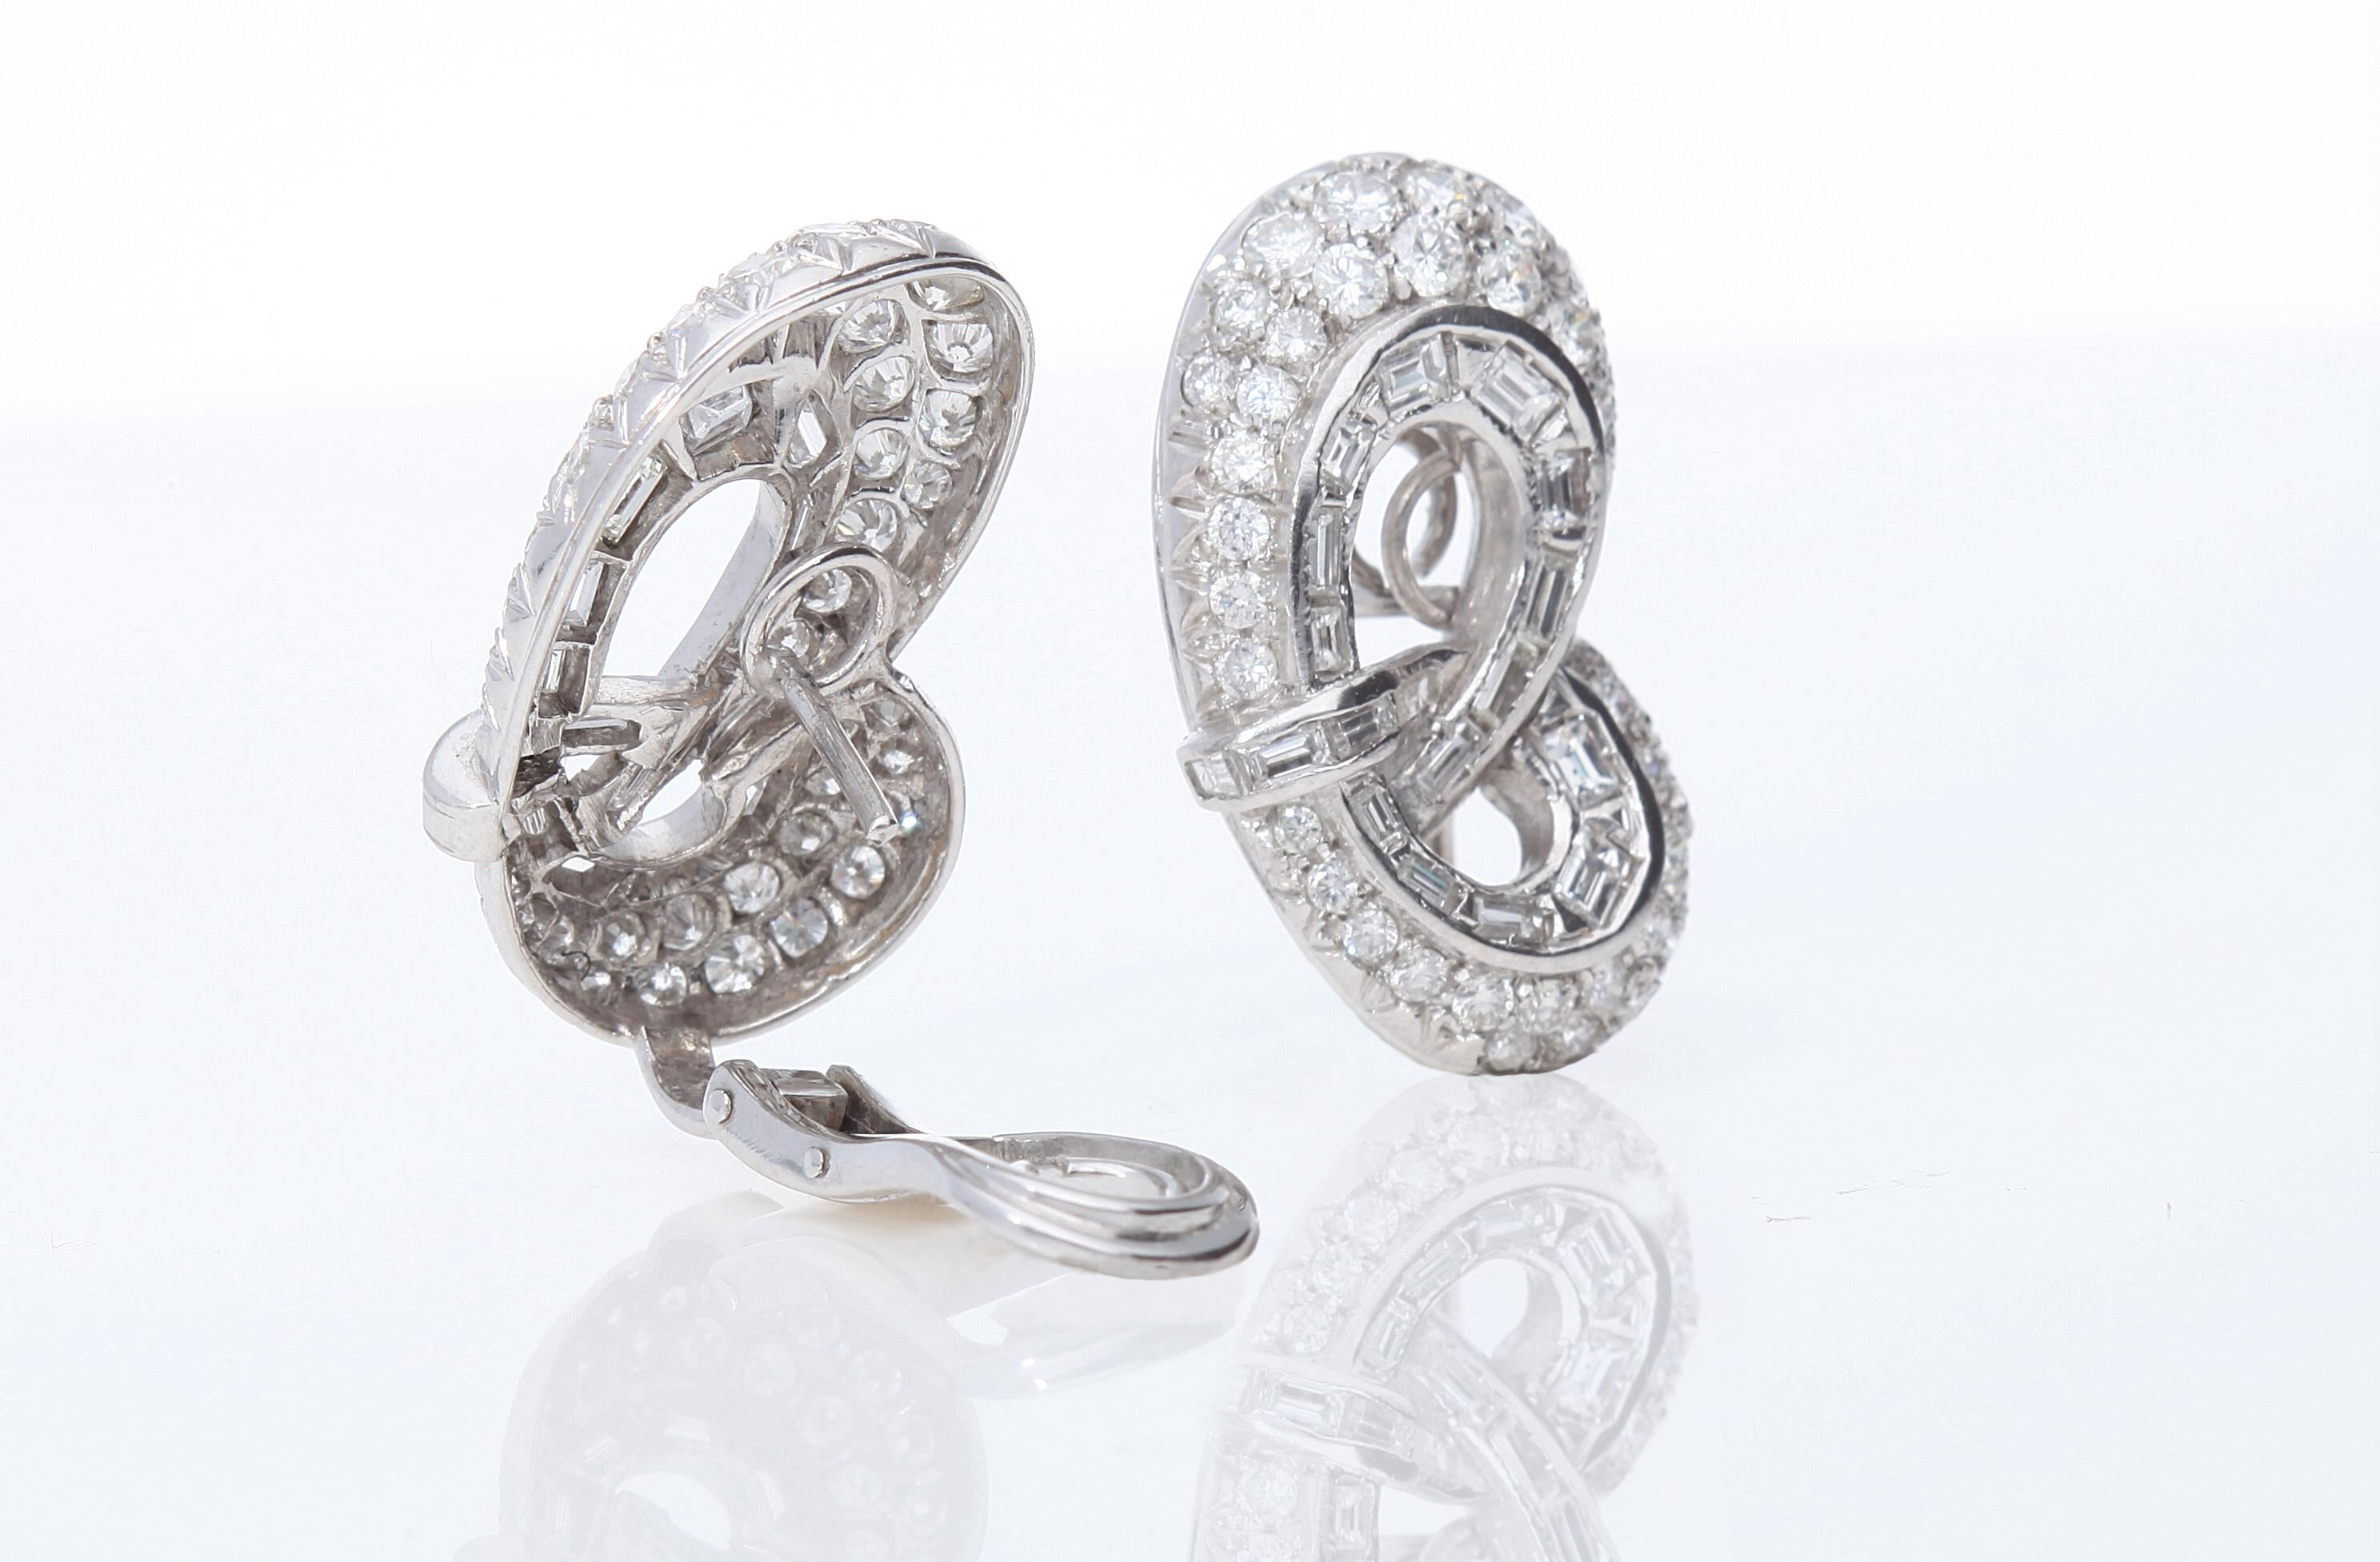 Women's Liberty earrings with ct 6.00 of diamonds